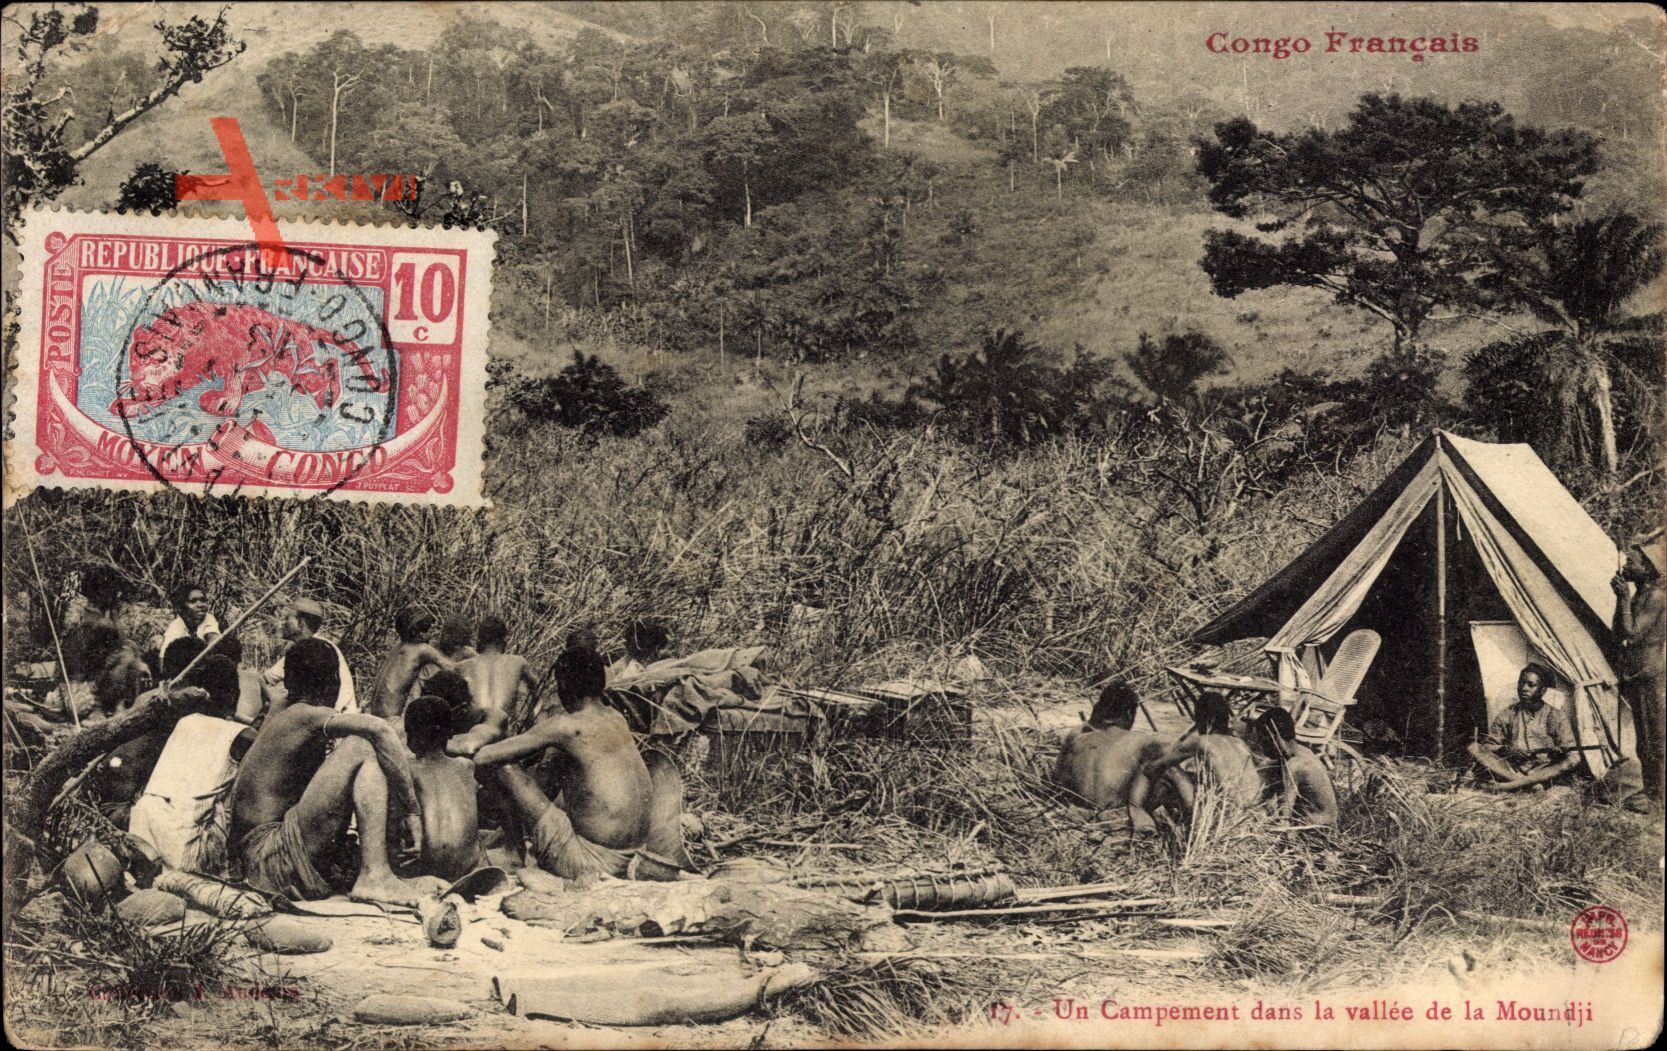 Französisch Kongo, Un campement dans la vallée de la moundji